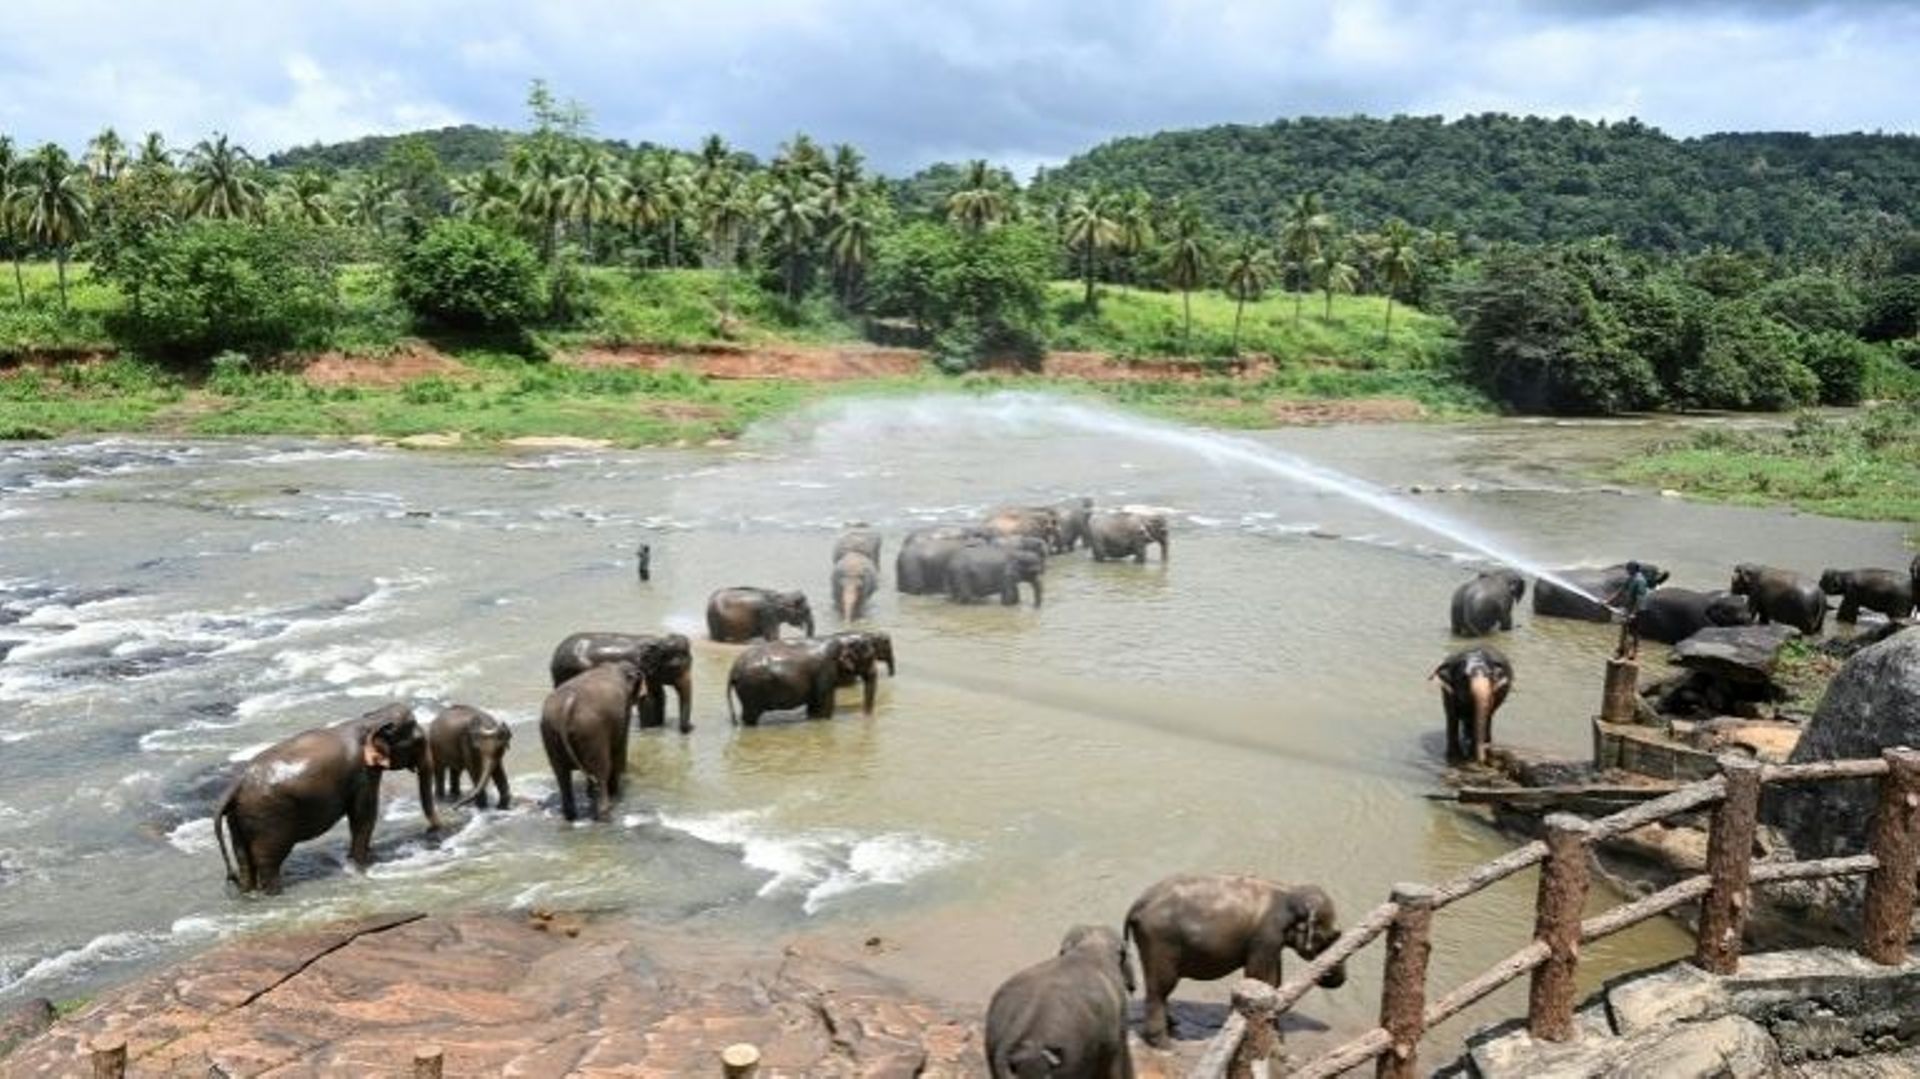 Un gardien arrose les éléphants d'eau lors de leur bain quotidien dans la rivière au sanctuaire d'éléphants de Pinnawala, le 11 août 2020.